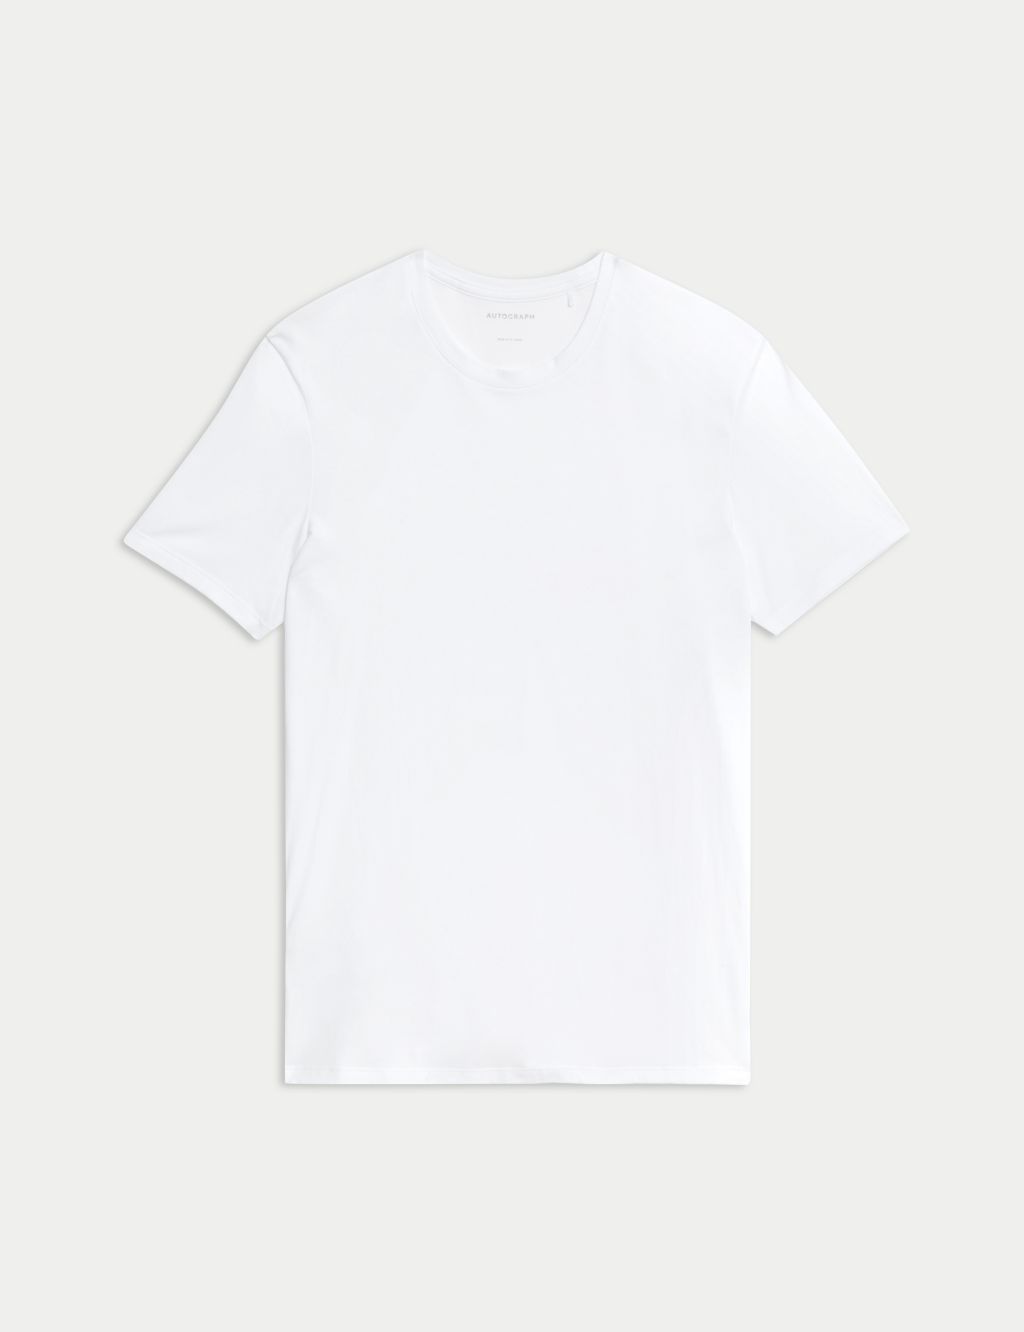 Supima® Cotton Blend T-Shirt Vest